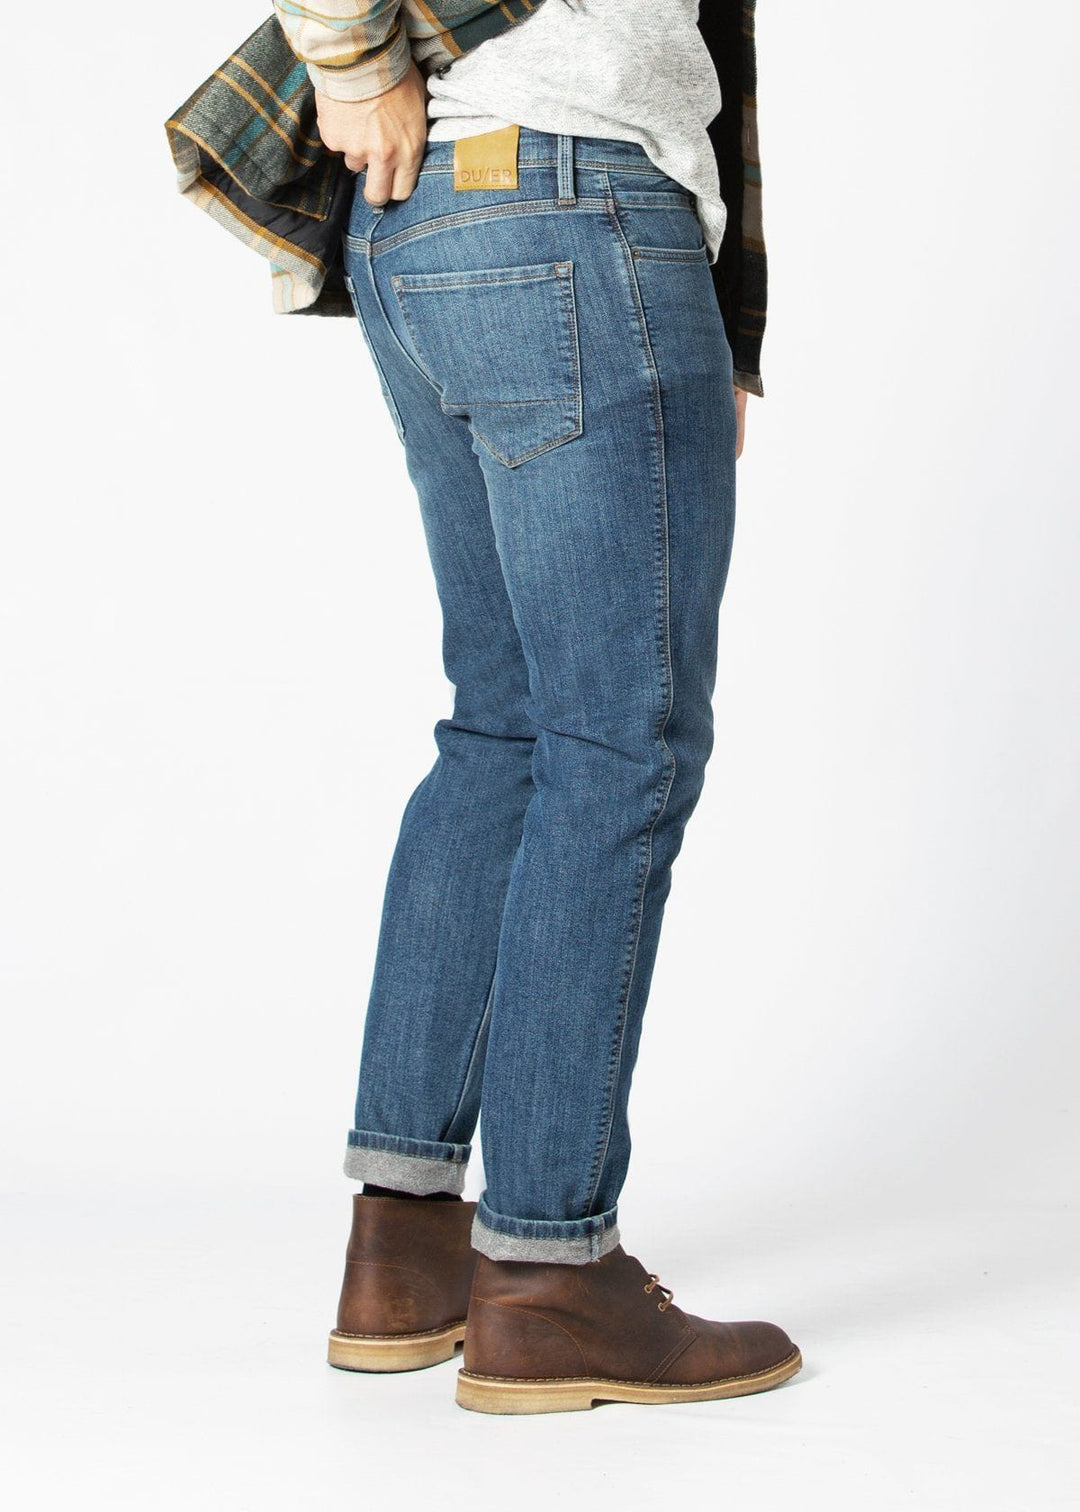 DU/ER Fireside Pantalon slim en jean pour hommes 